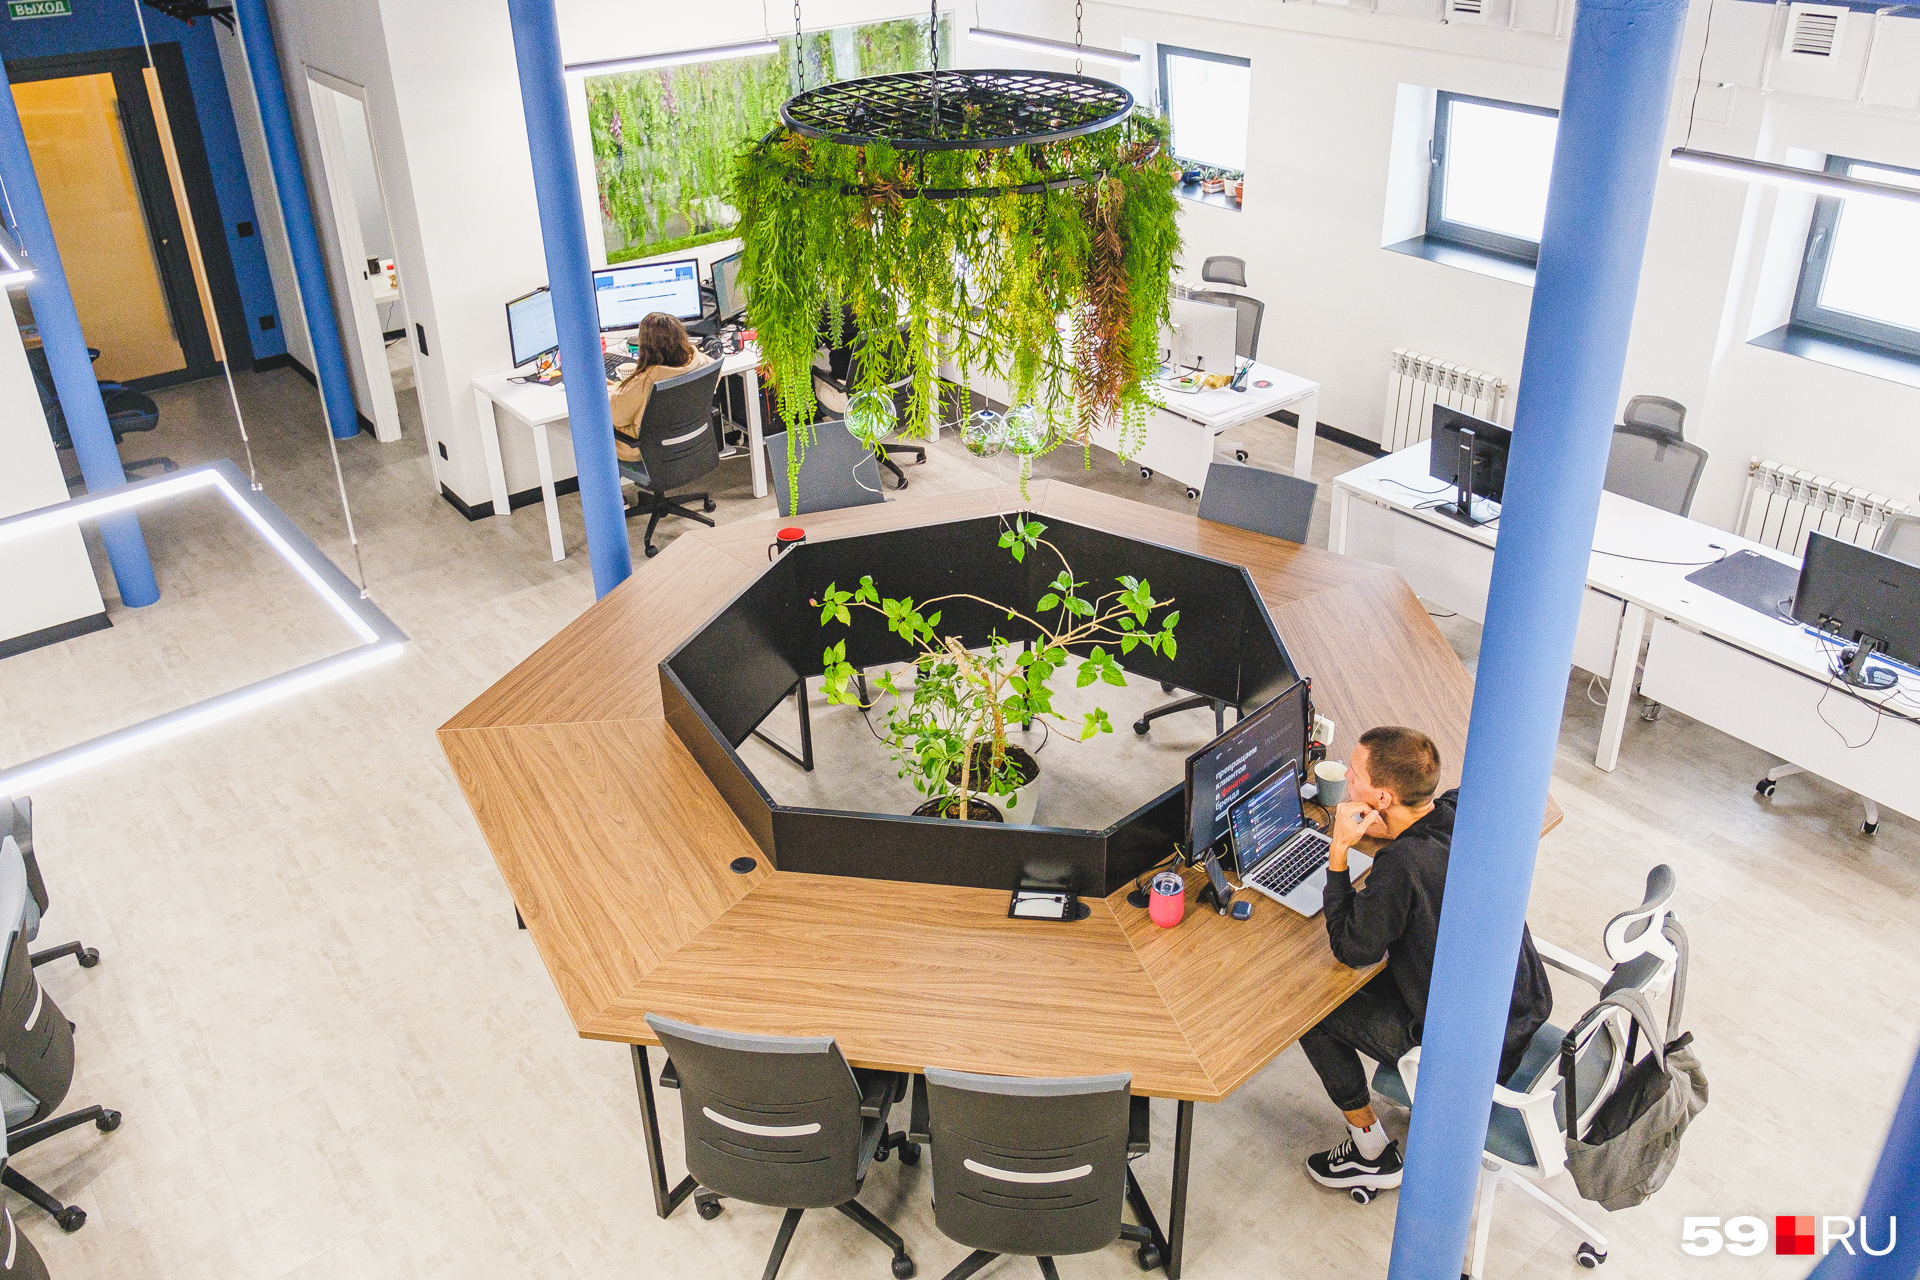 Офис украшен искусственными растениями, но есть и живые цветы. Например, в центре стола стоит живой цветок, который переехал еще из прошлого офиса